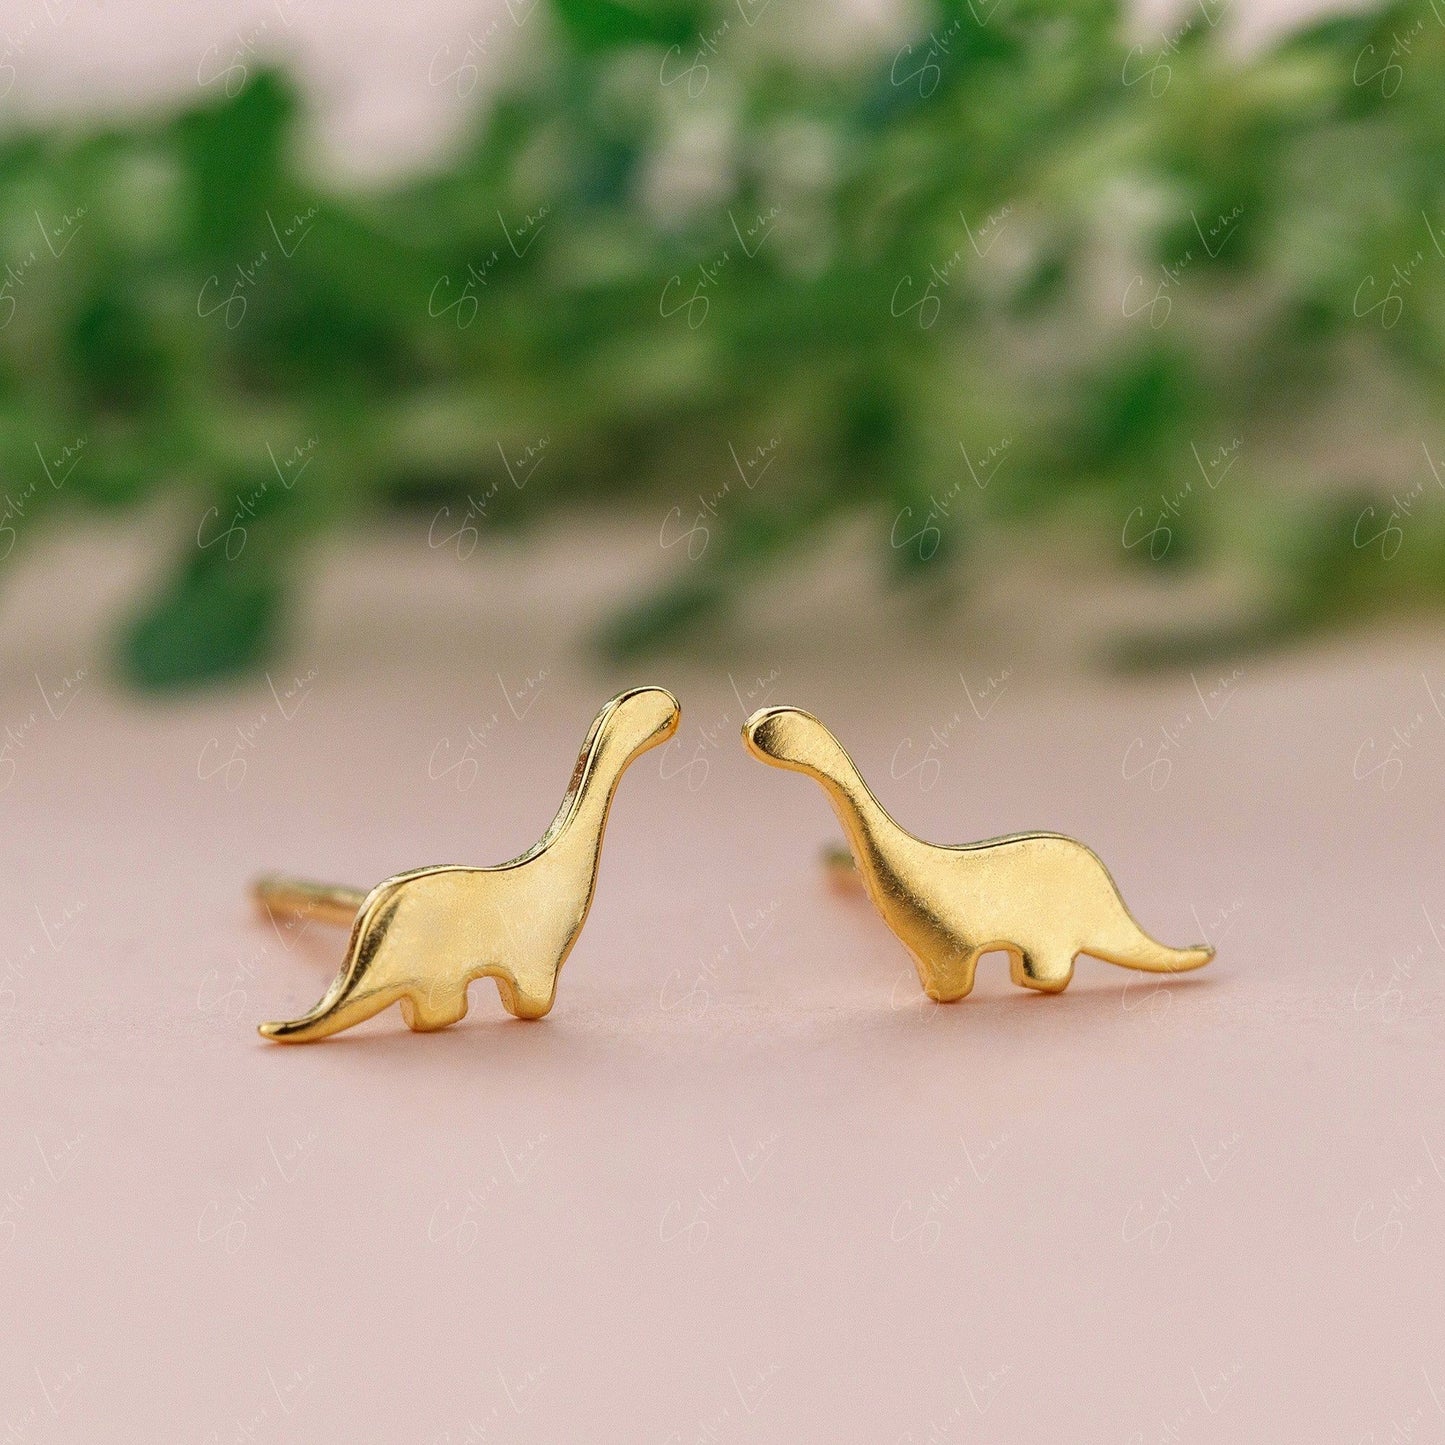 animal dinosaur stud earrings